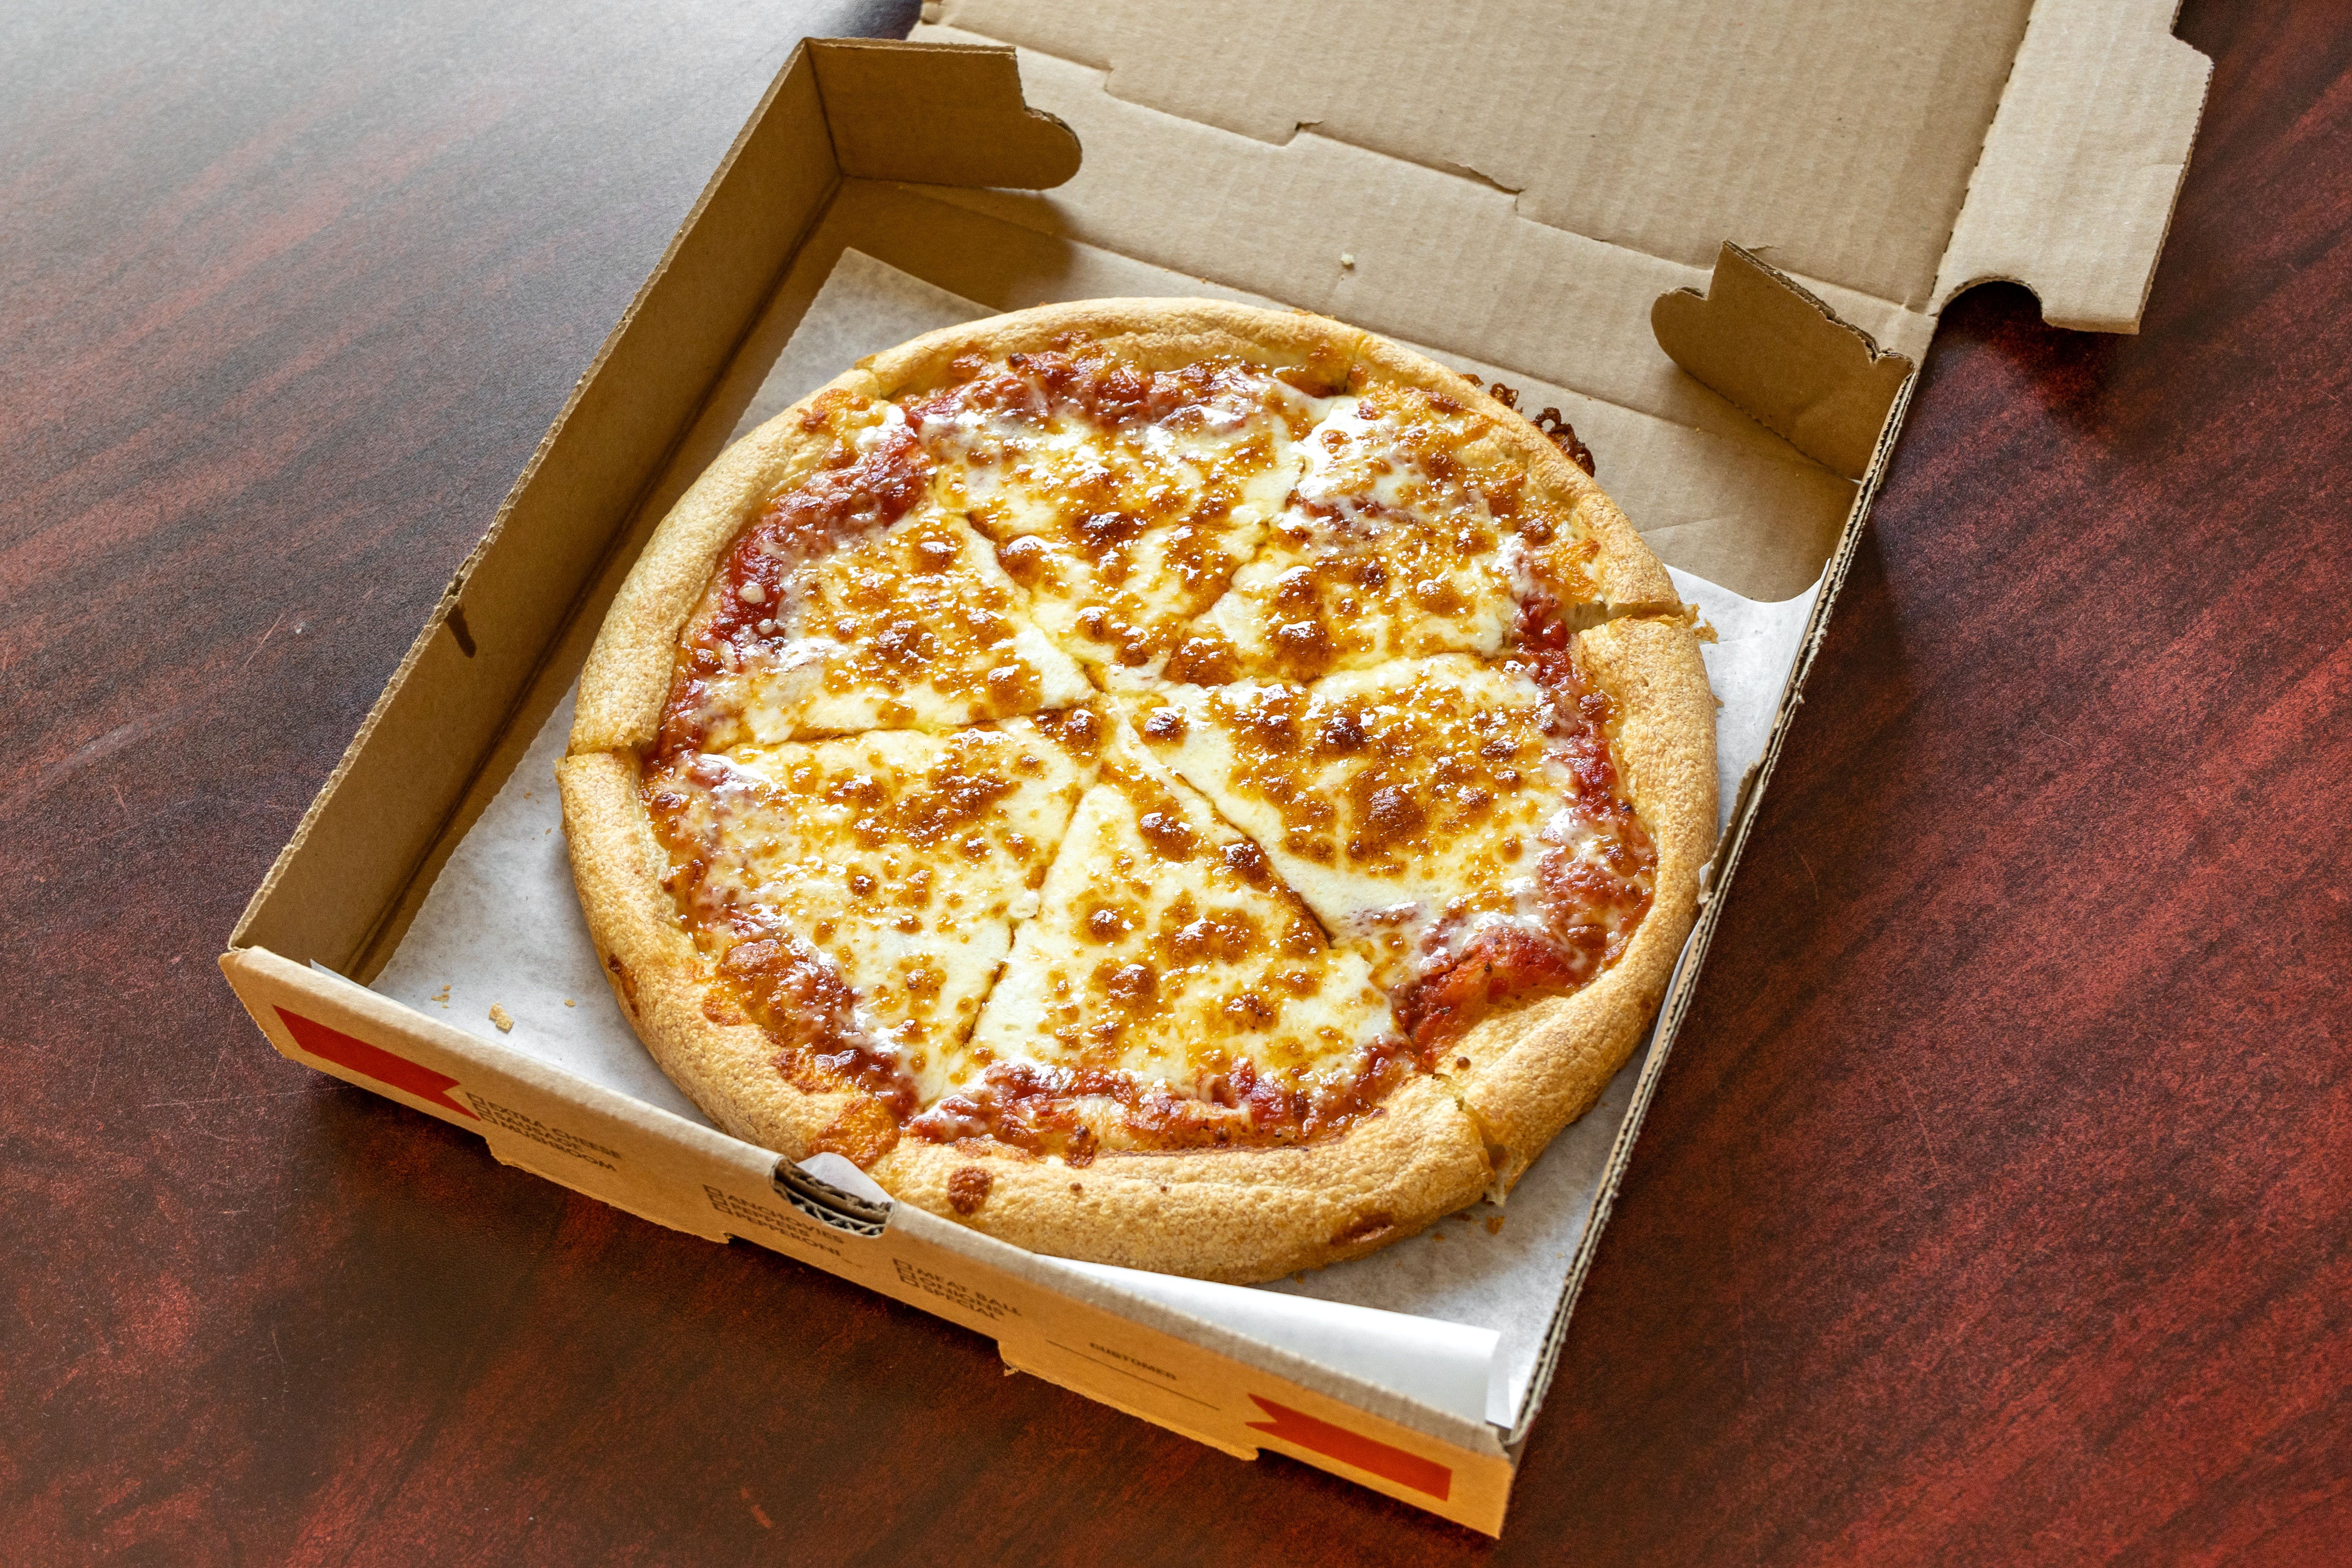 II. Benefits of Healthier Pizza Options